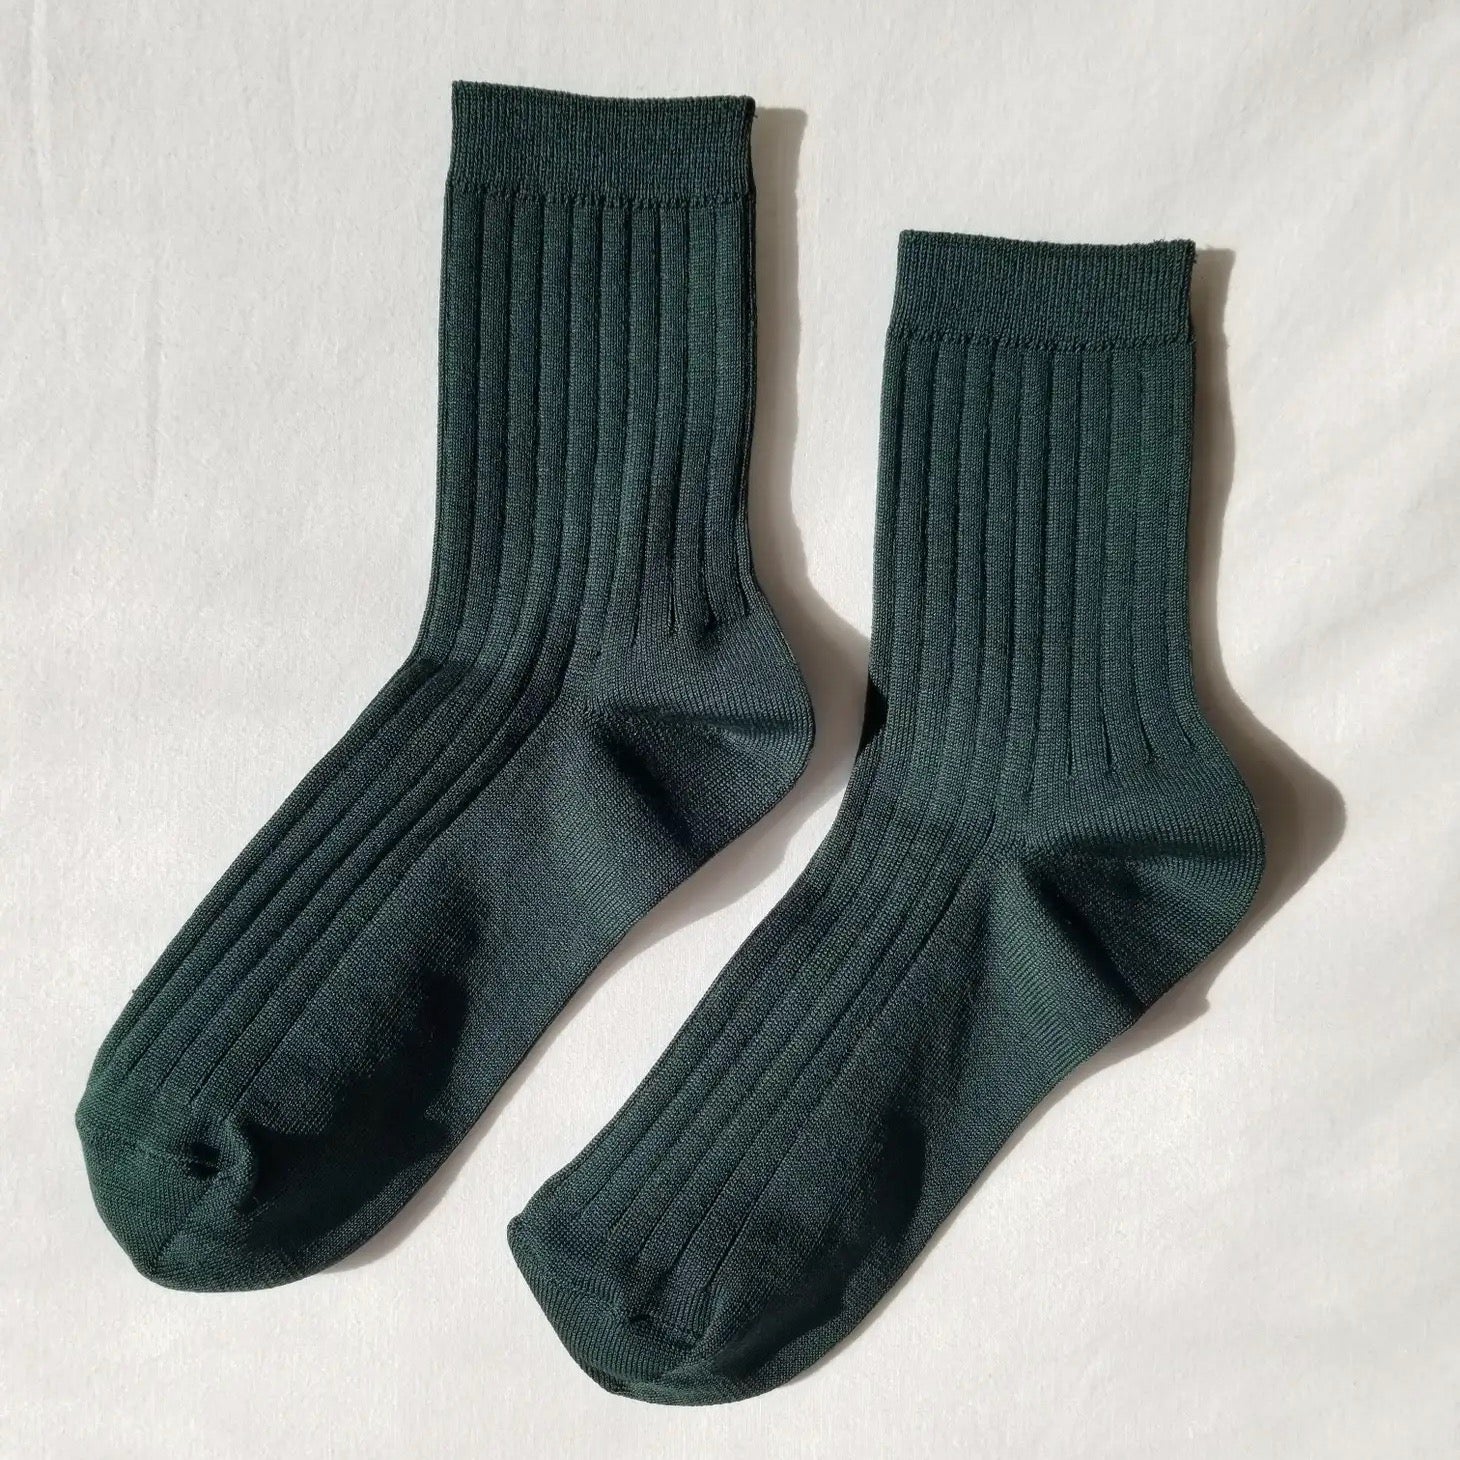 Vintage Style Socks